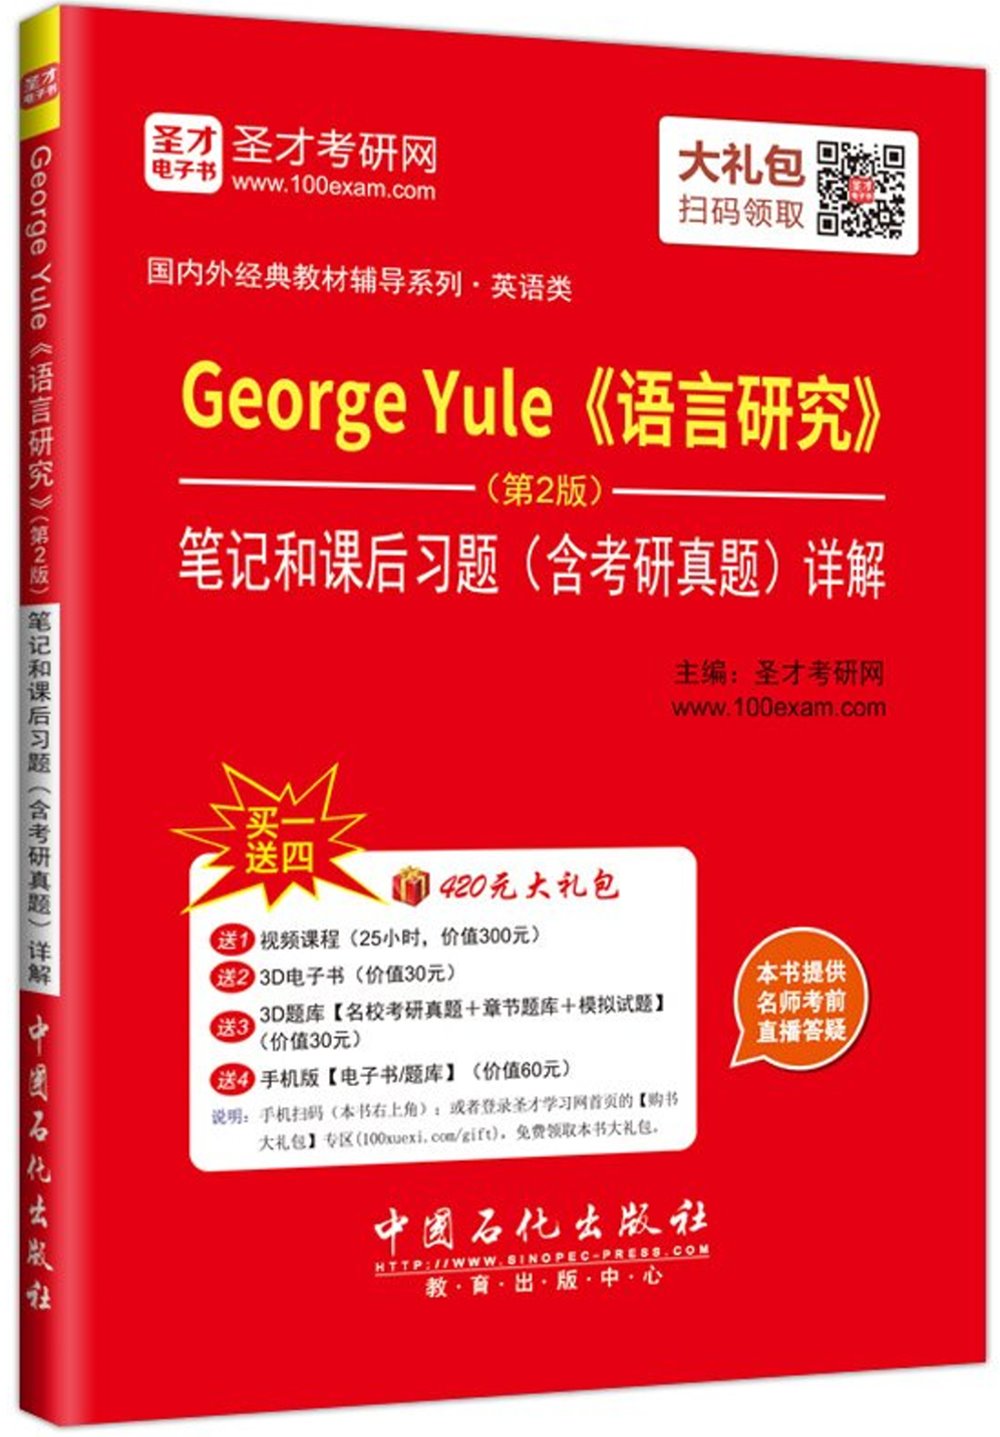 George Yule《語言研究》(第2版)筆記和課後習題(含考研真題)詳解